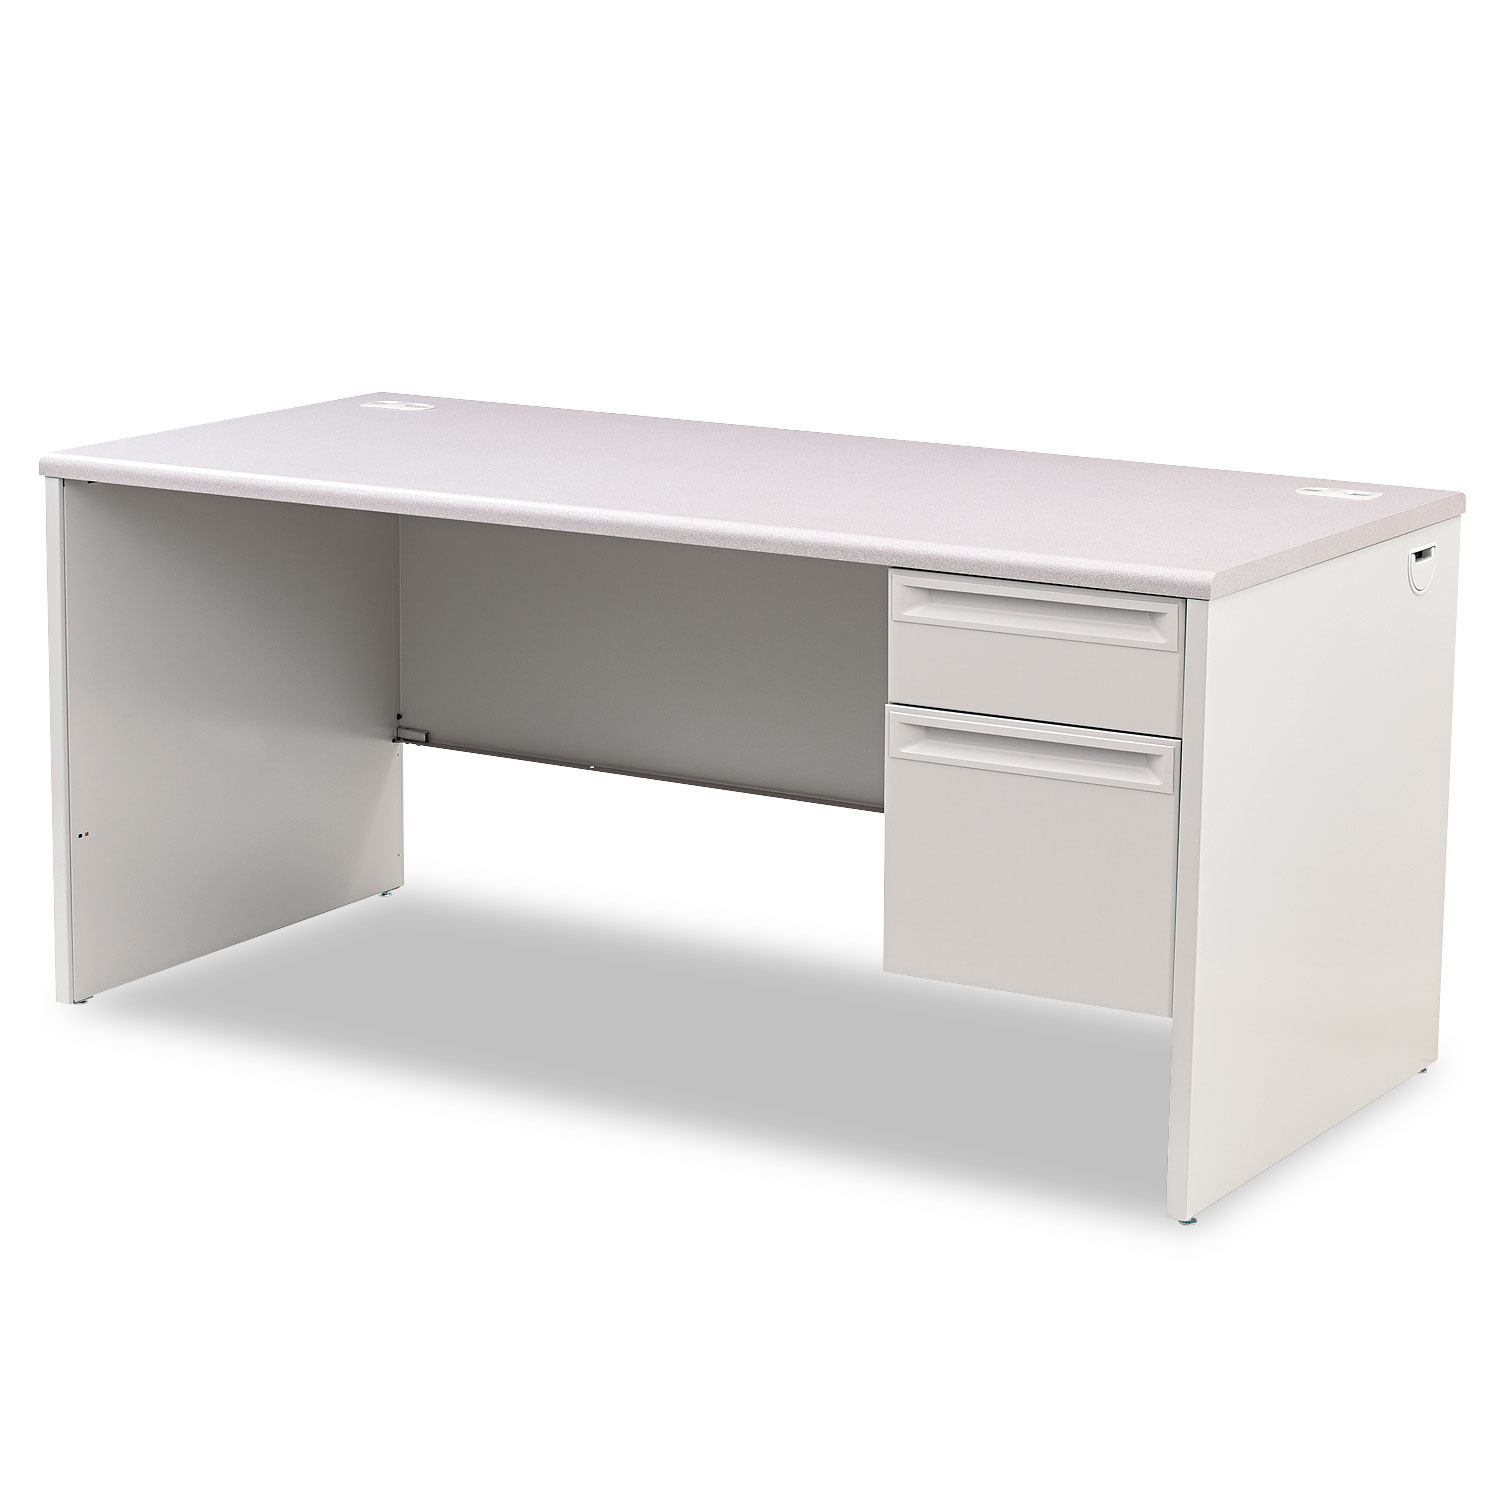  HON H38291R.G2.Q 38000 Series Right Pedestal Desk, 66w x 30d x 29.5h, Light Gray (HON38291RG2Q) 